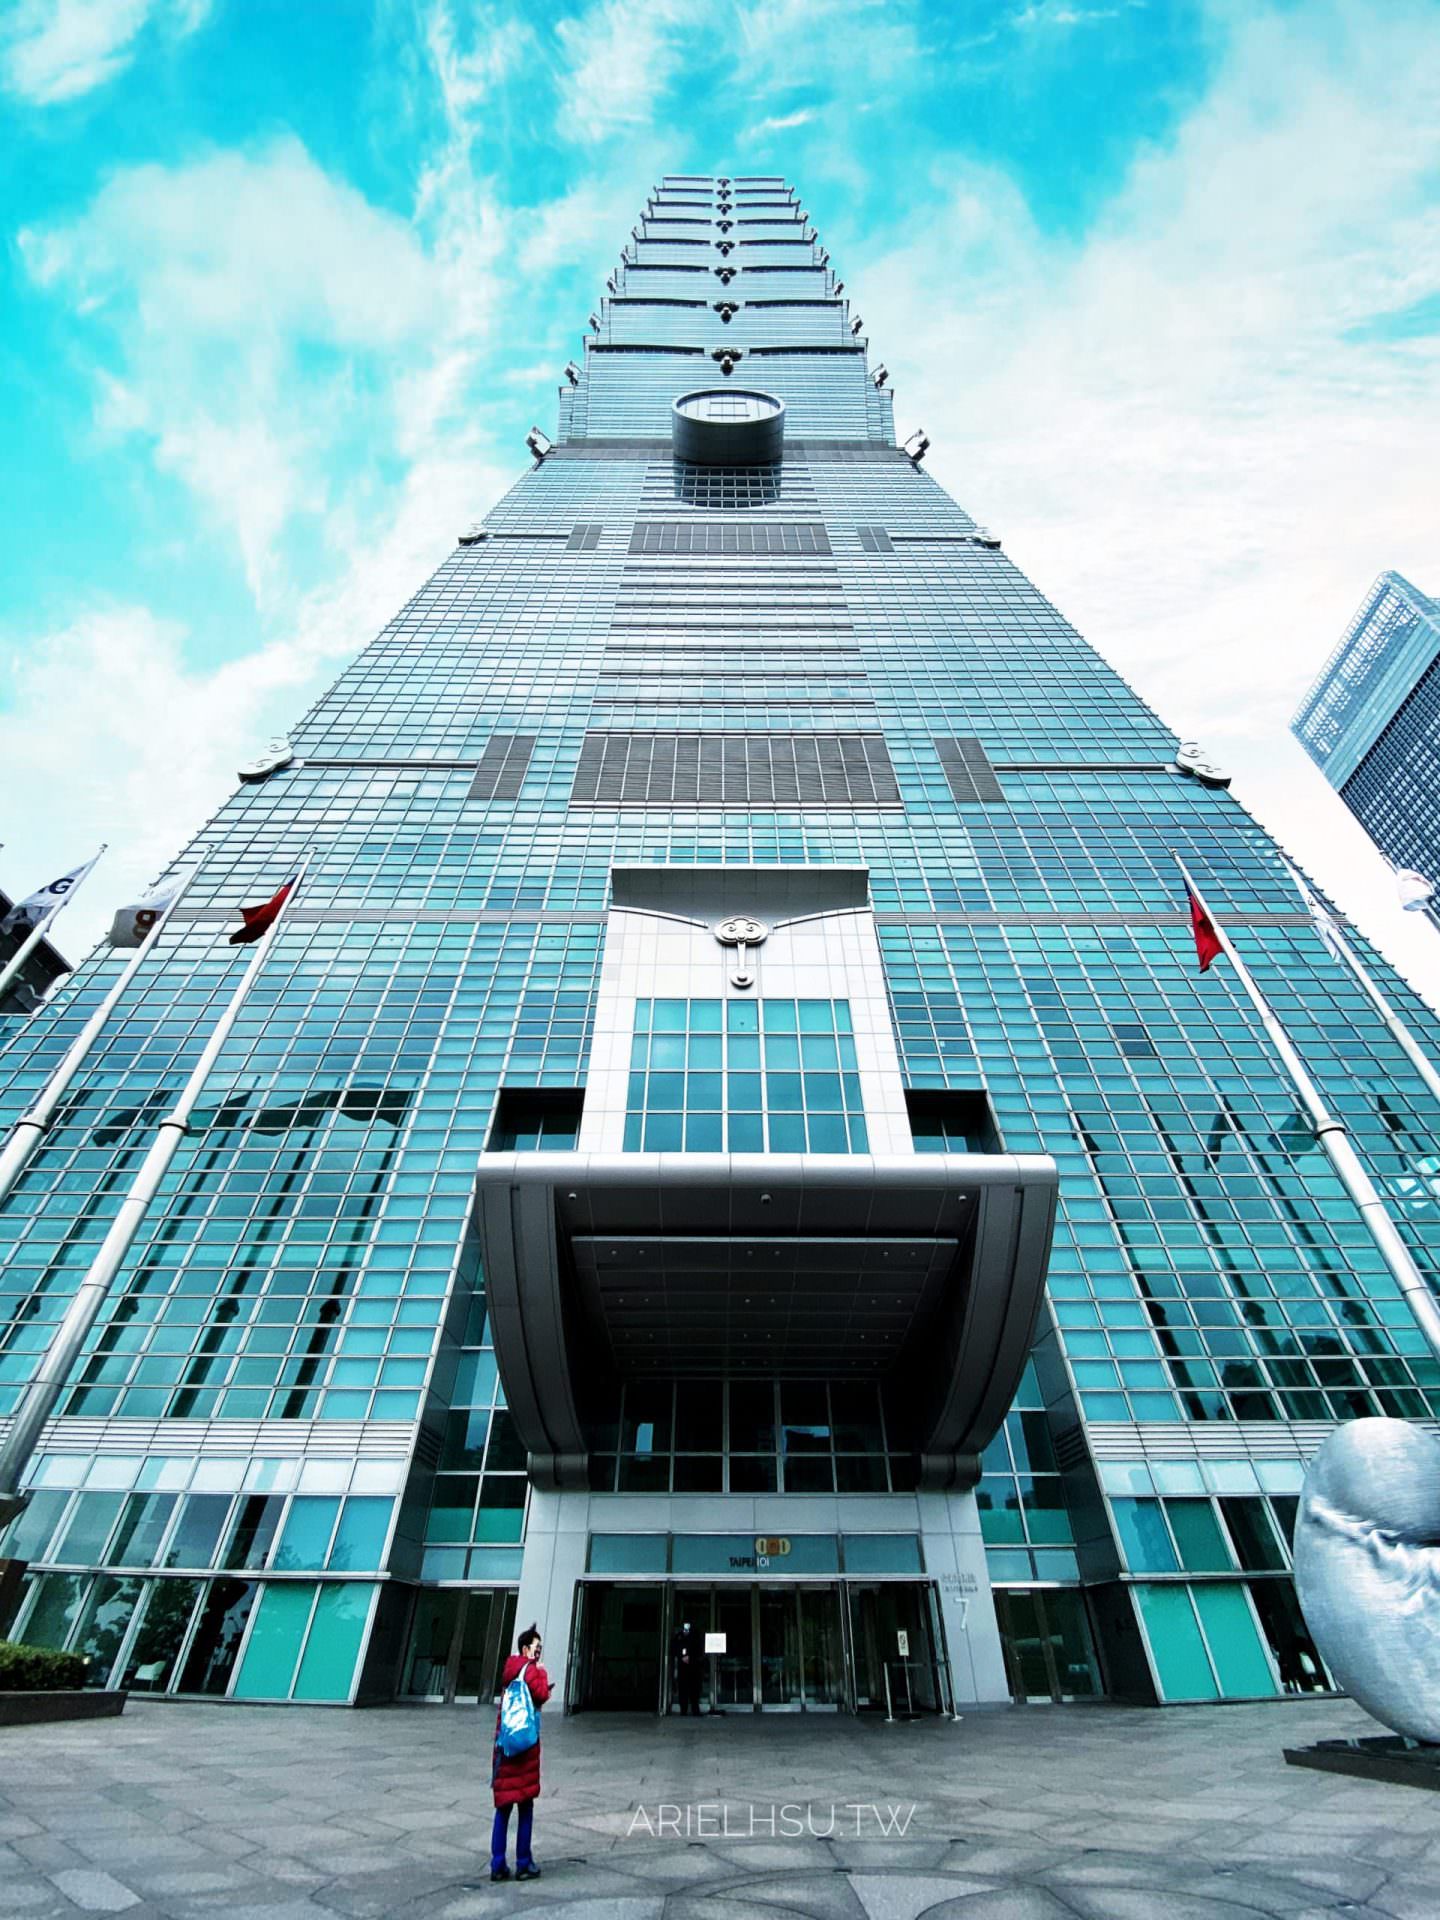 【開箱】台北101大樓35F Sky Park 打造全球最美頂級商辦，高樓景觀垂直社區 TAIPEI 101 Tower Level 35